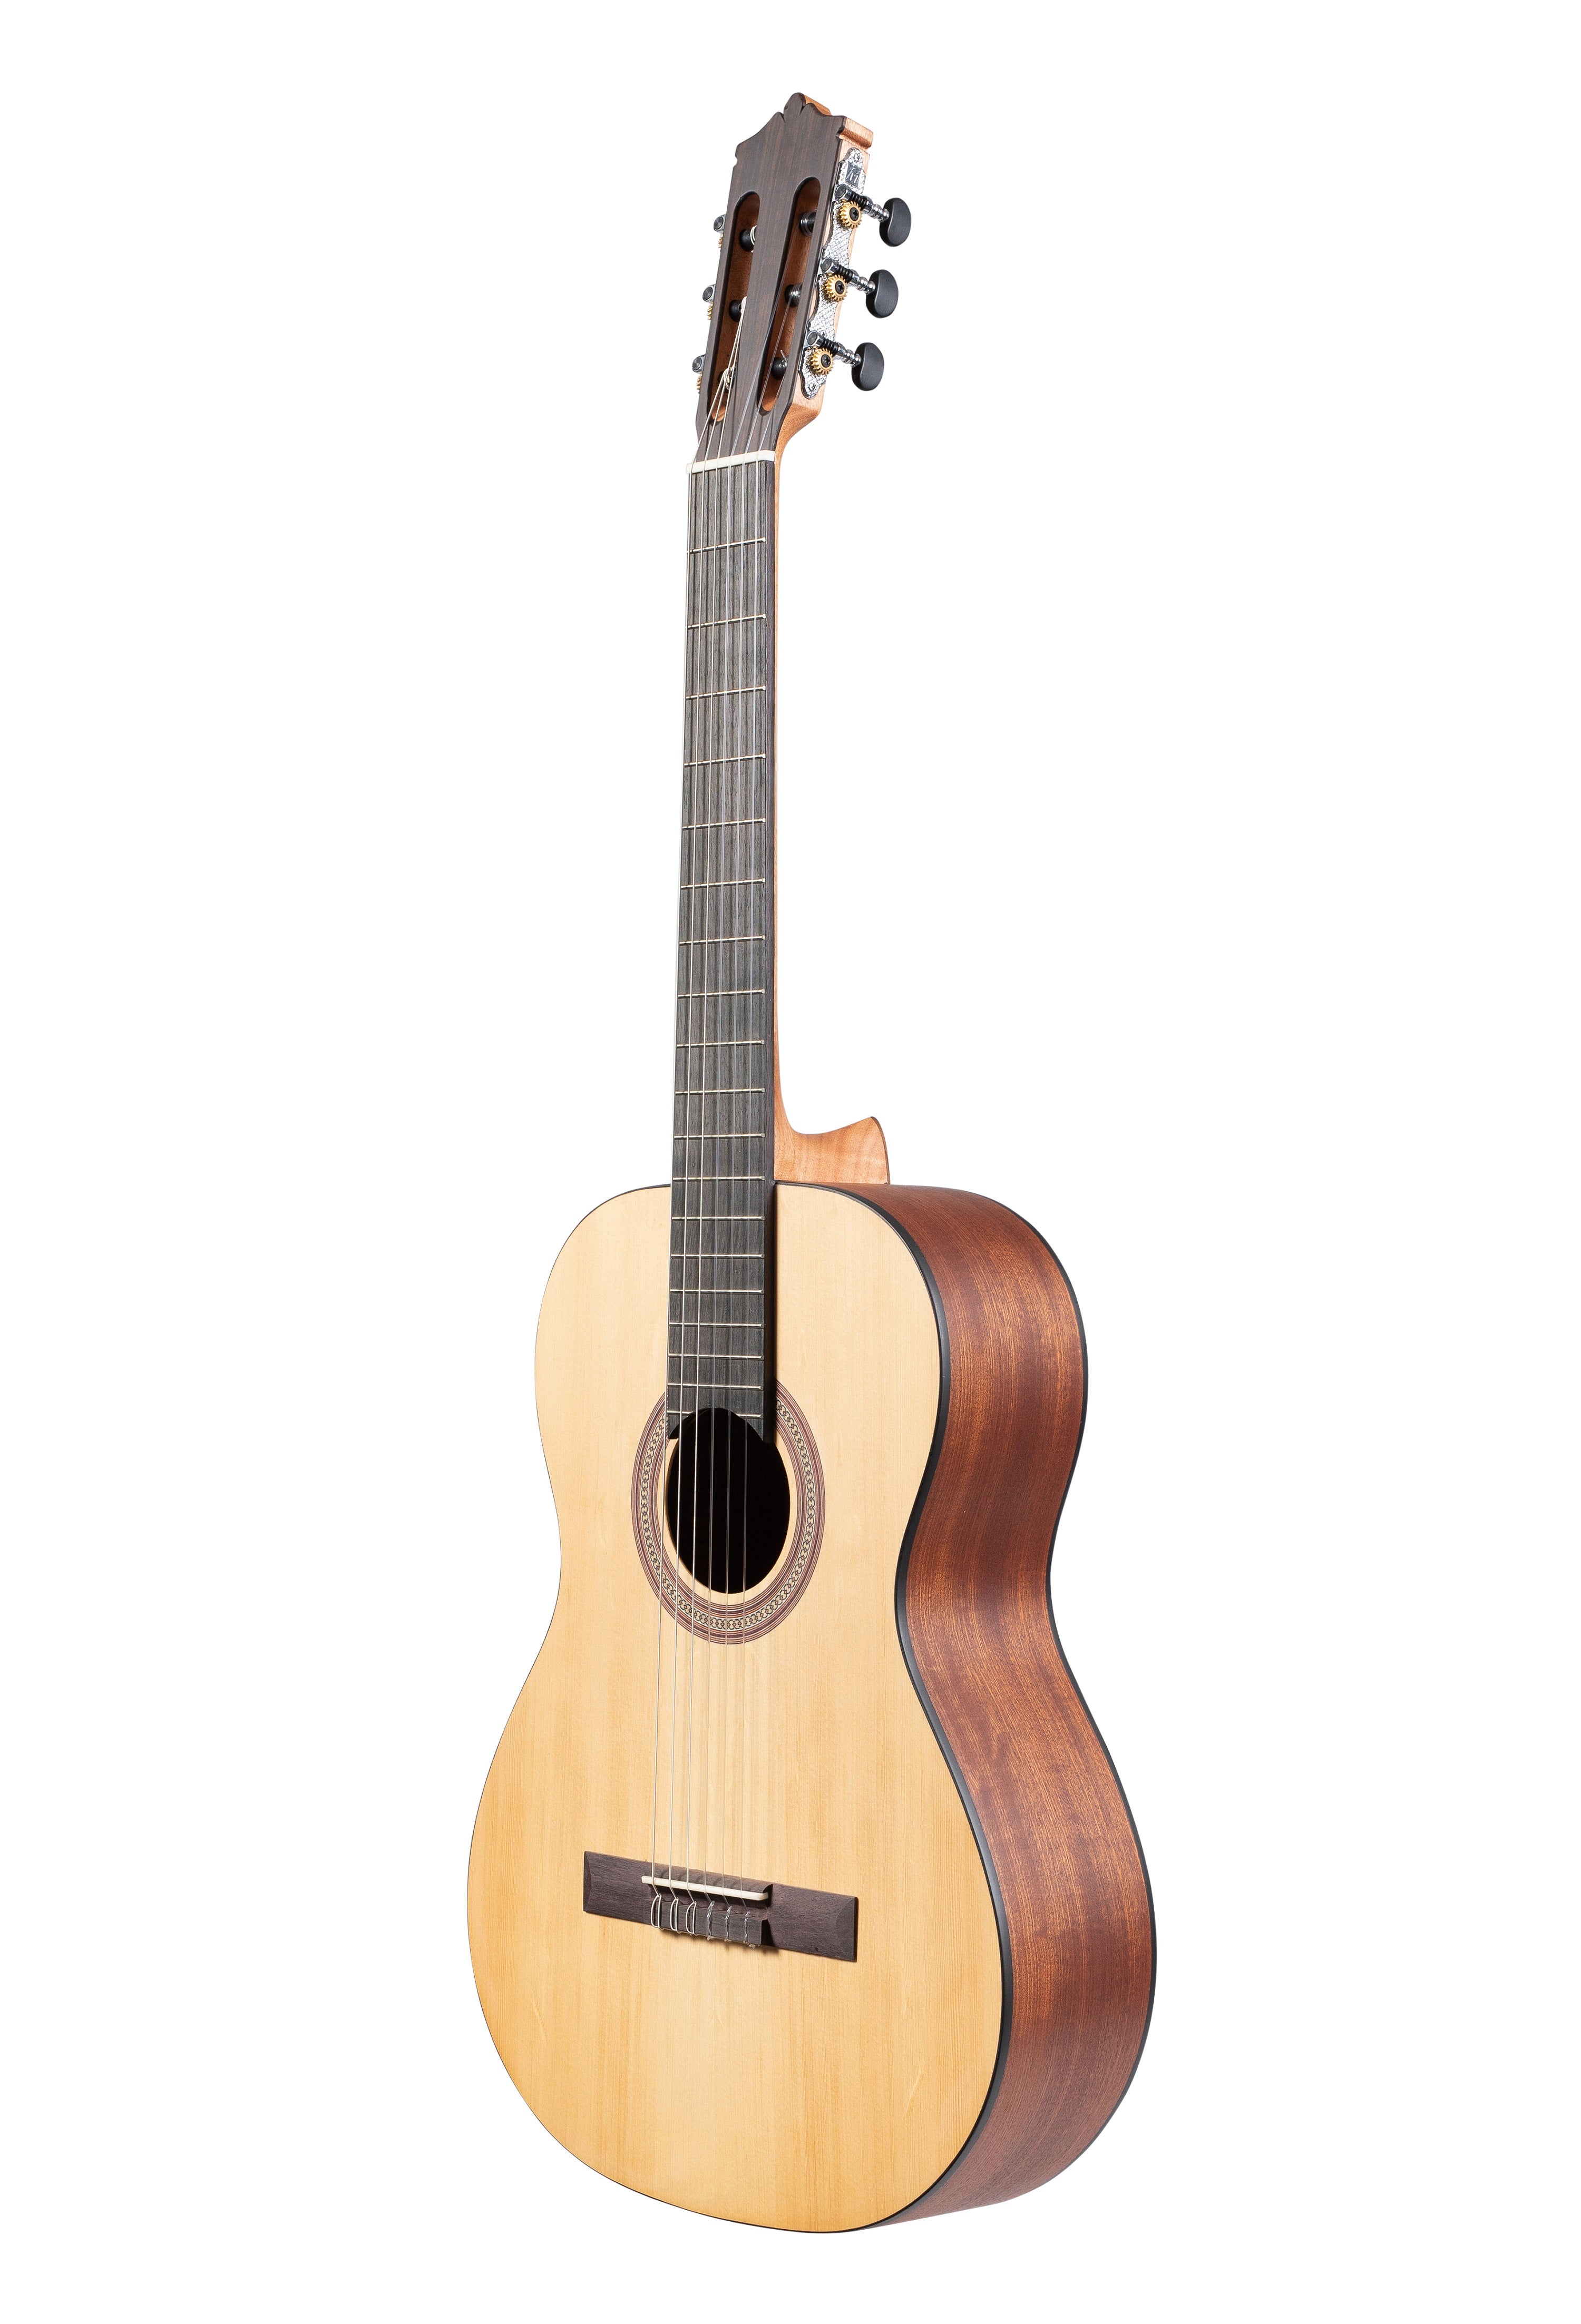 Katoh MCG18 Classical Guitar, With Bag